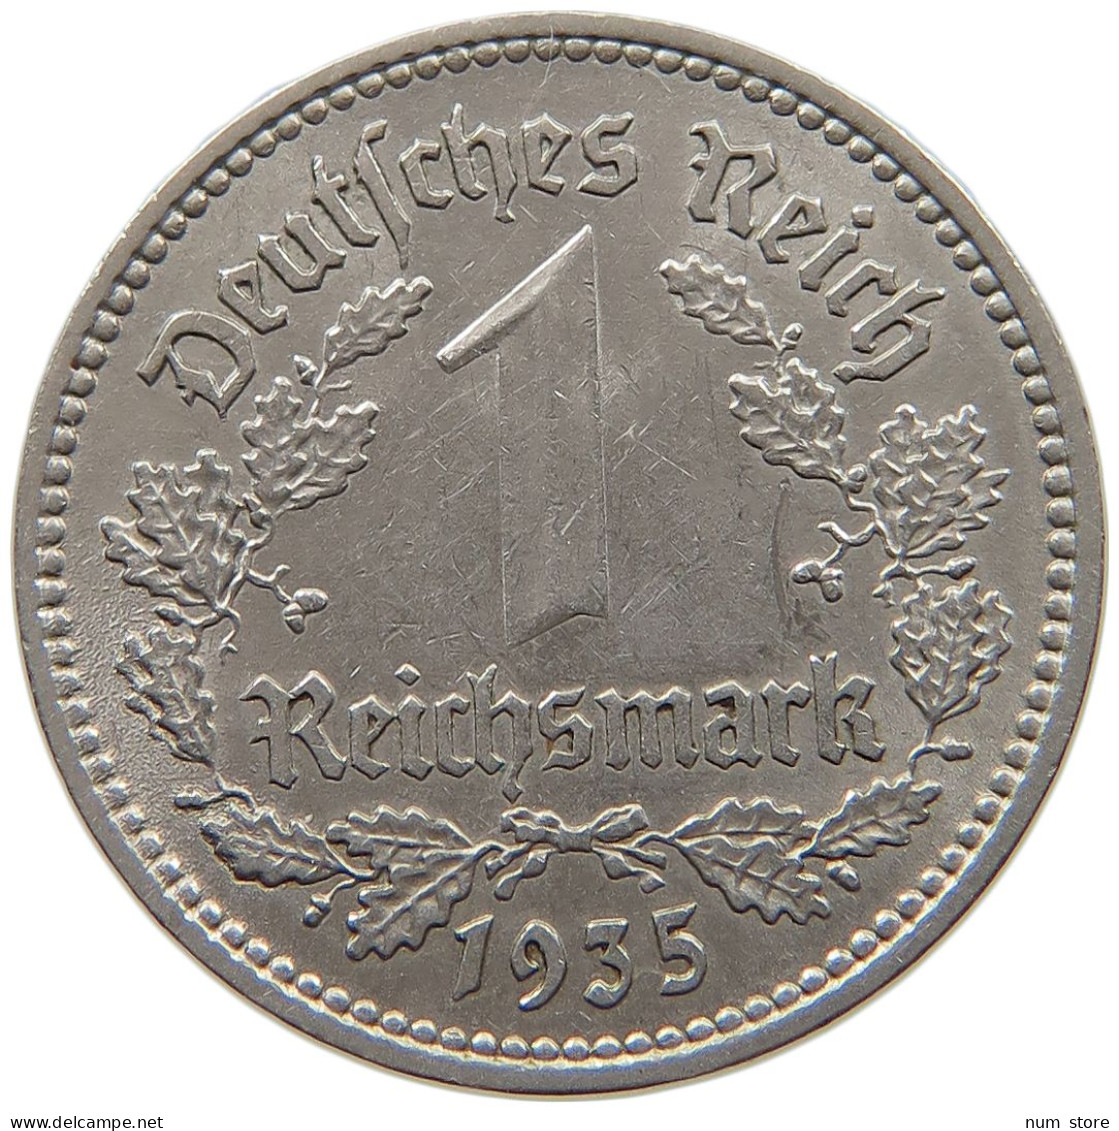 DRITTES REICH MARK 1935 A J.354 #c016 0063 - 1 Reichsmark